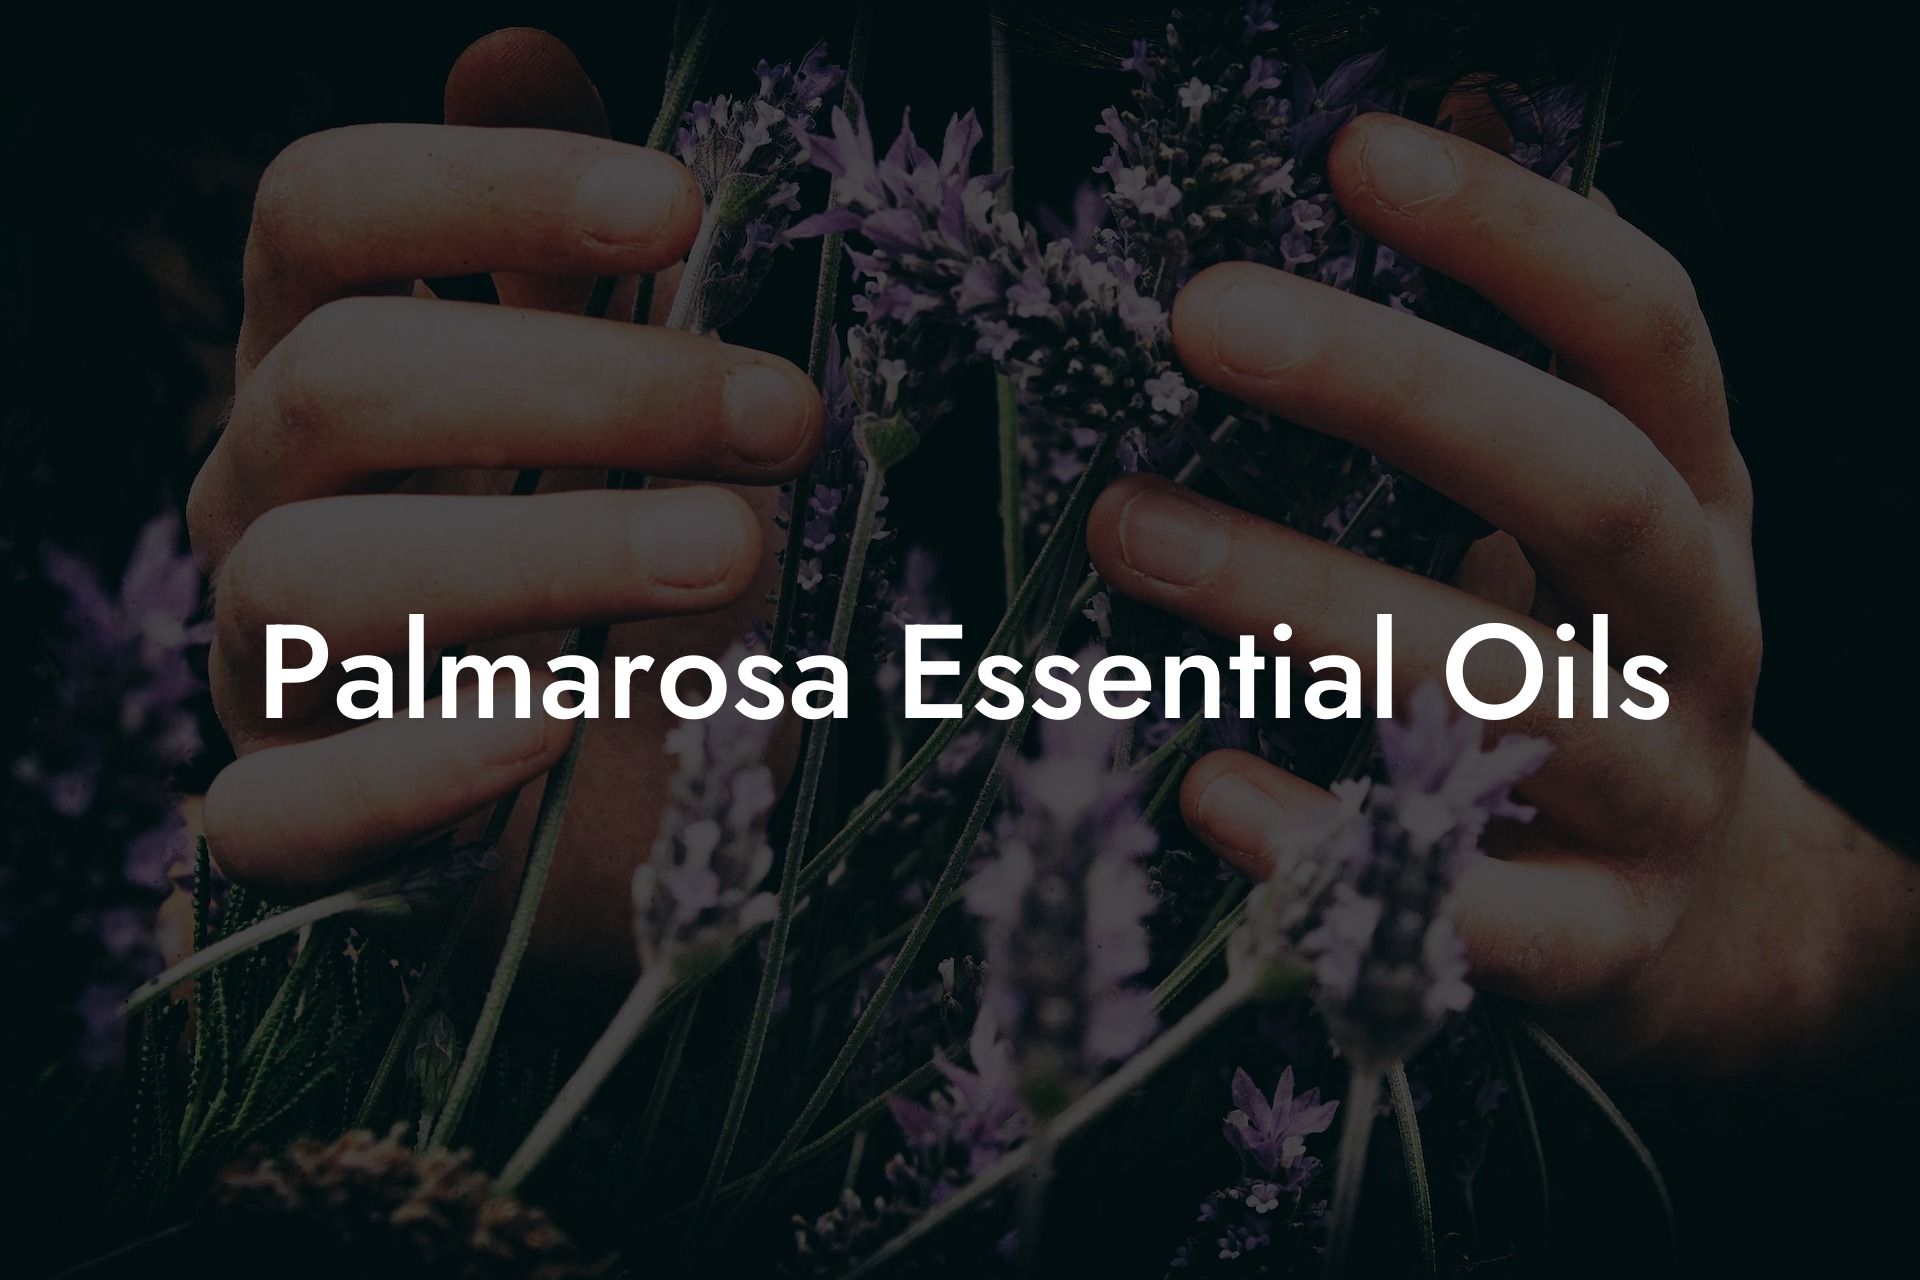 Palmarosa Essential Oils